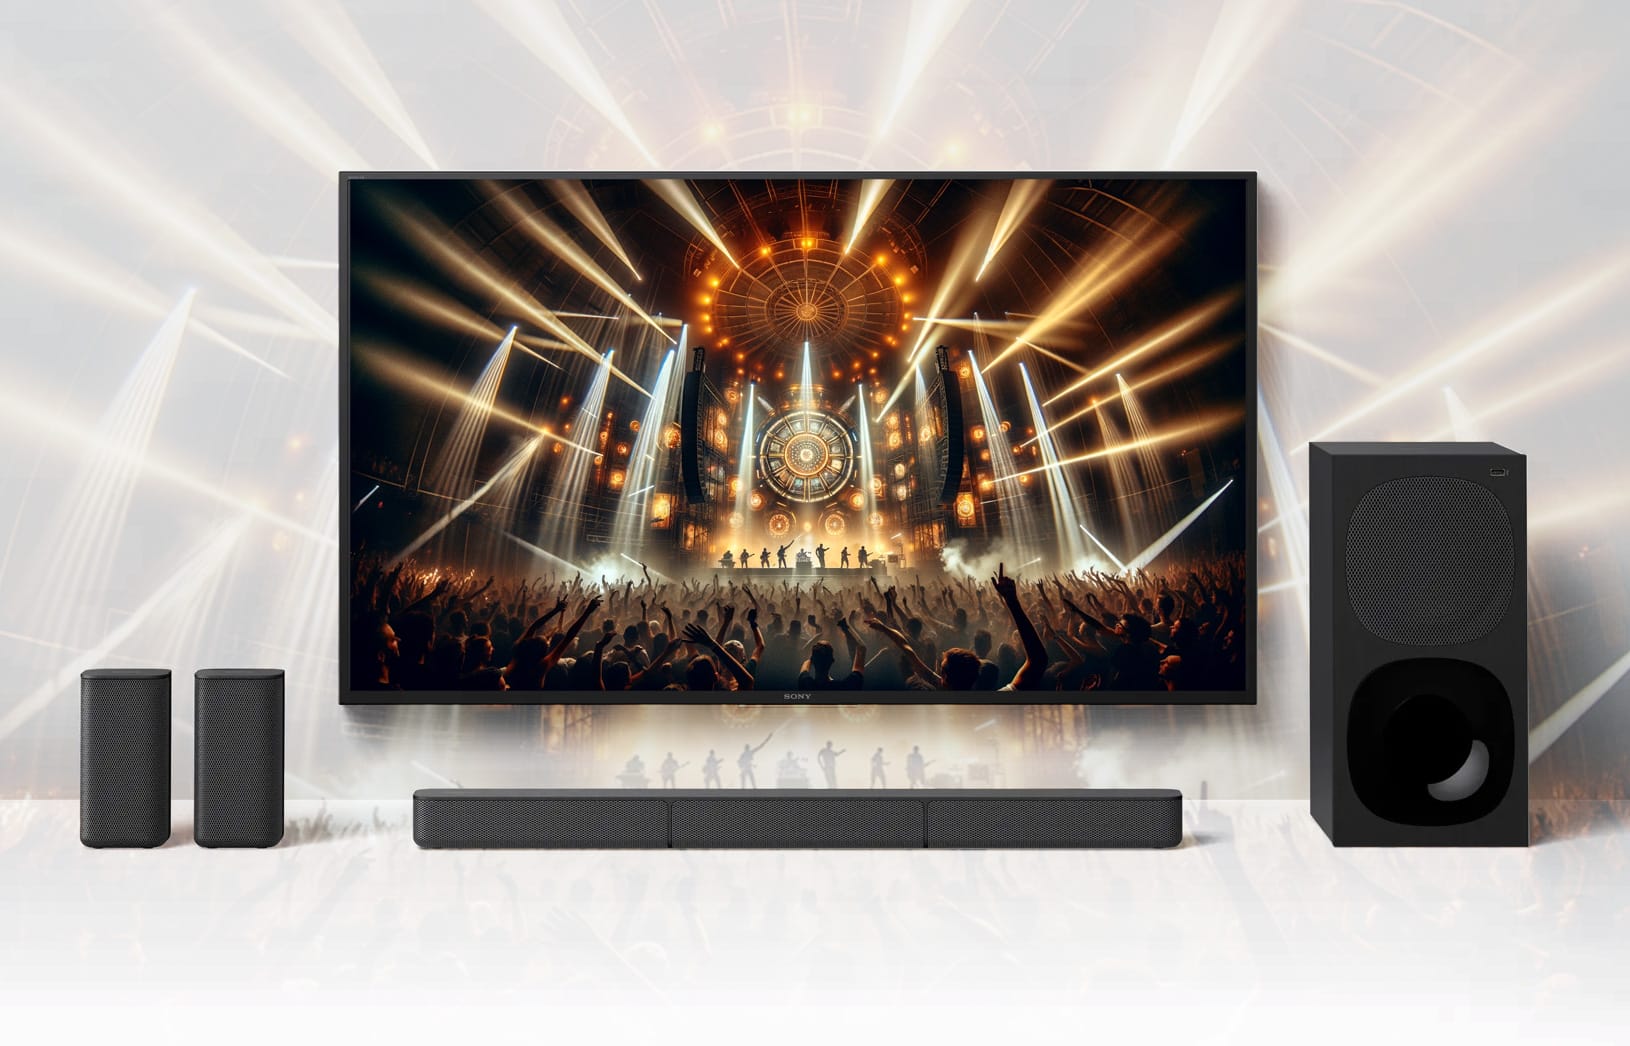 Sony bringt beliebte Soundbar-Kombi HT-S20R zurück auf den Markt! - 4K Filme